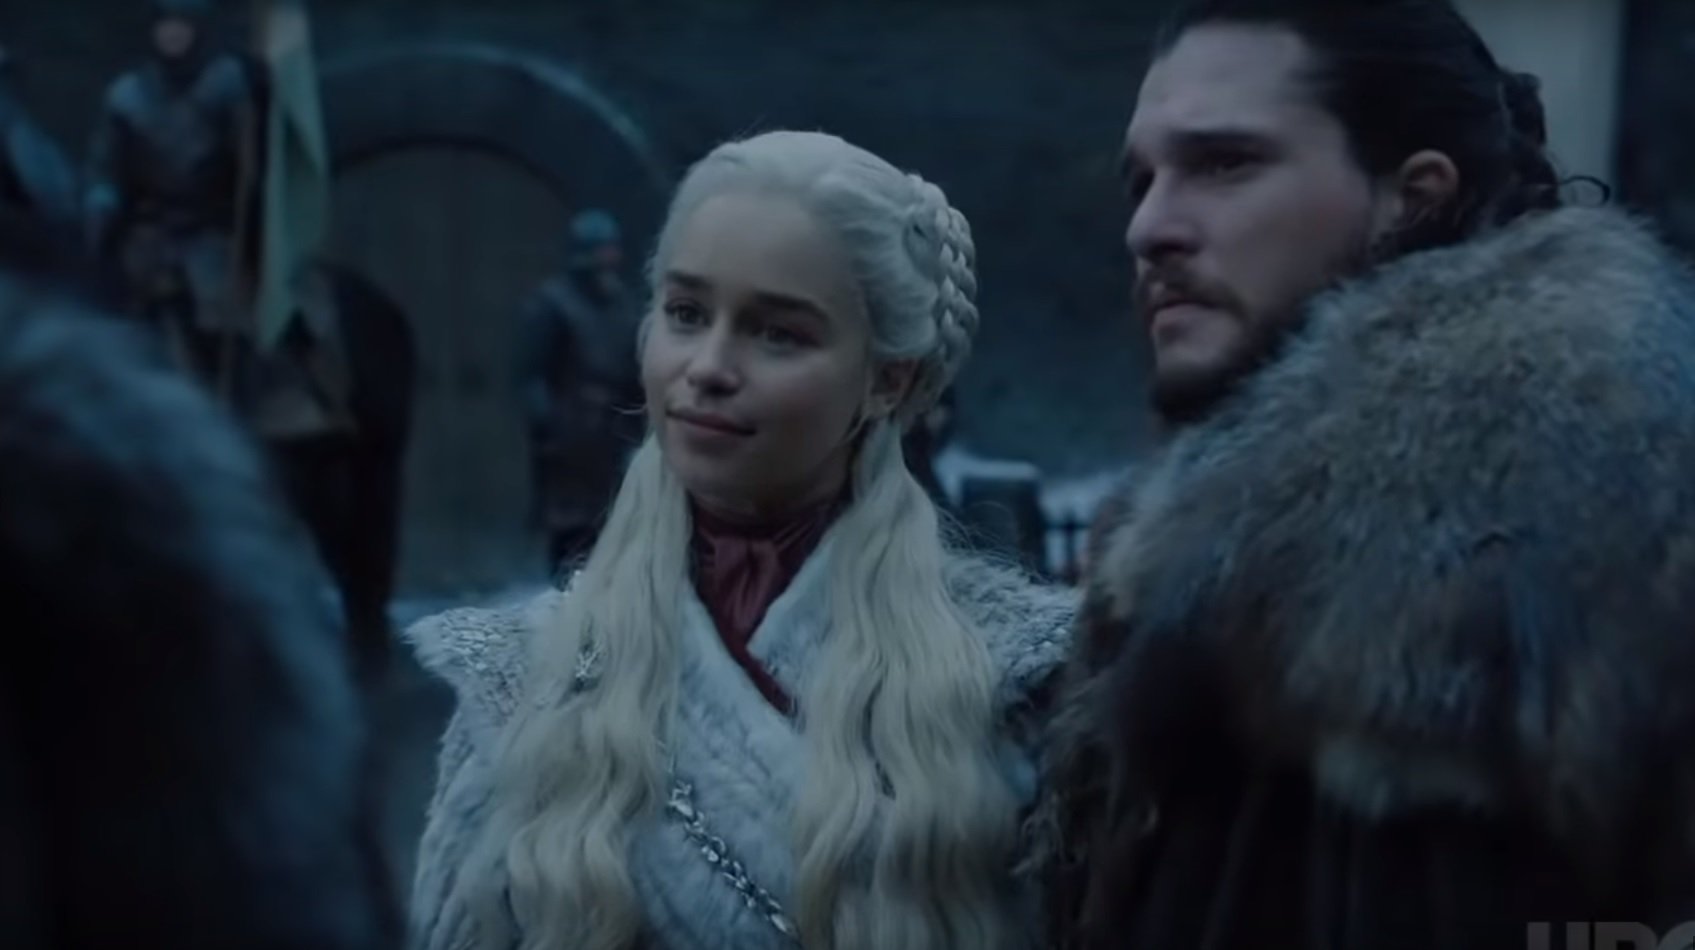 Primer cop d'ull a 'Joc de Trons': el cara a cara de Sansa Stark i Daenerys Targaryen